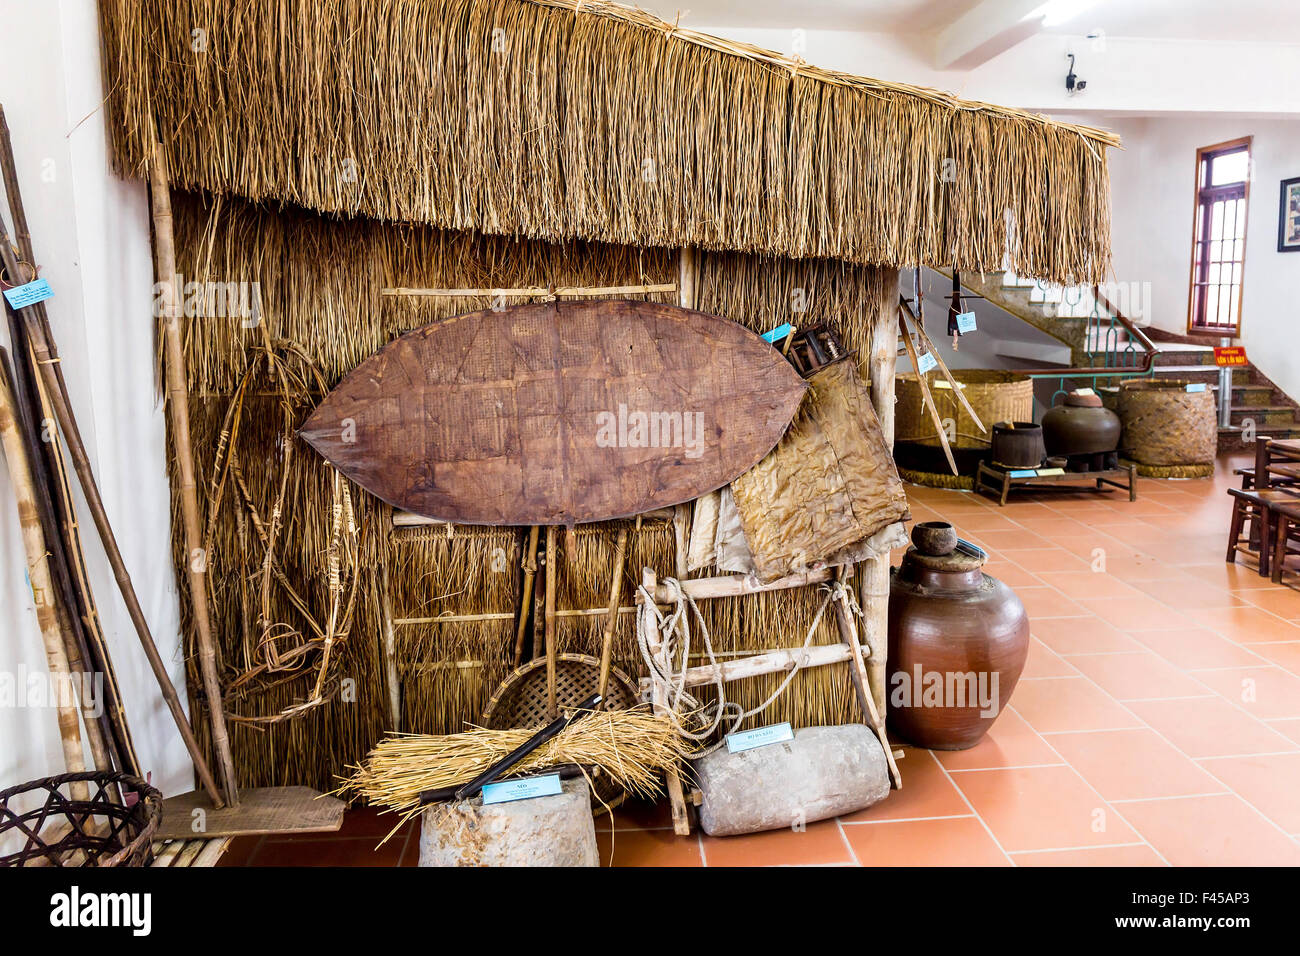 Vieux outils agricoles et de pêche vietnamiens sur l'affichage. Banque D'Images